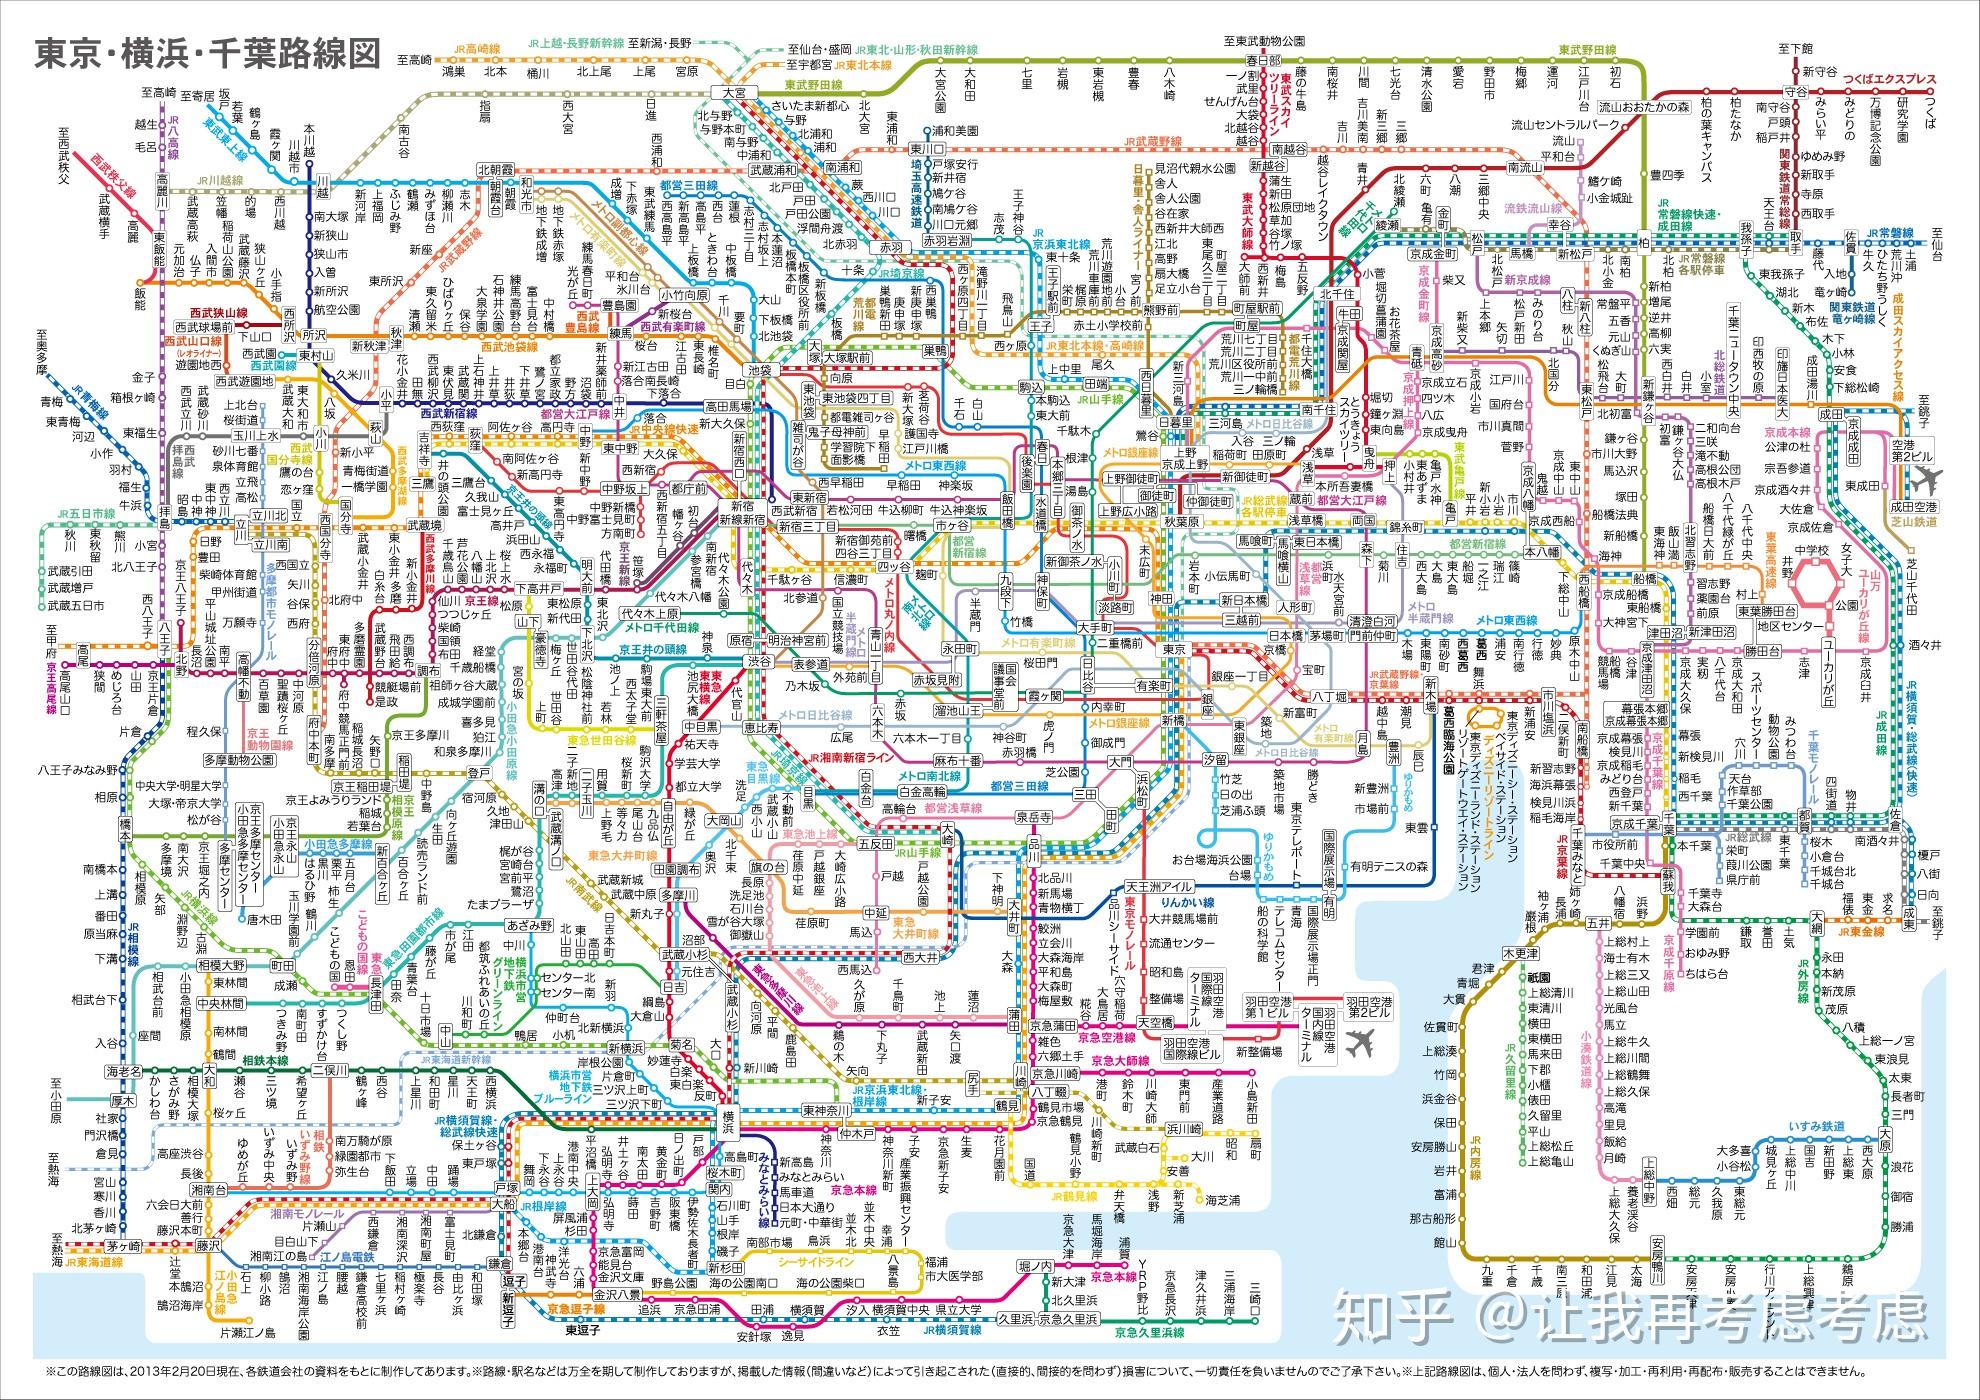 关于日本大都市圈的轨道交通,深入了解过的轨道迷都知道从线路里程,到